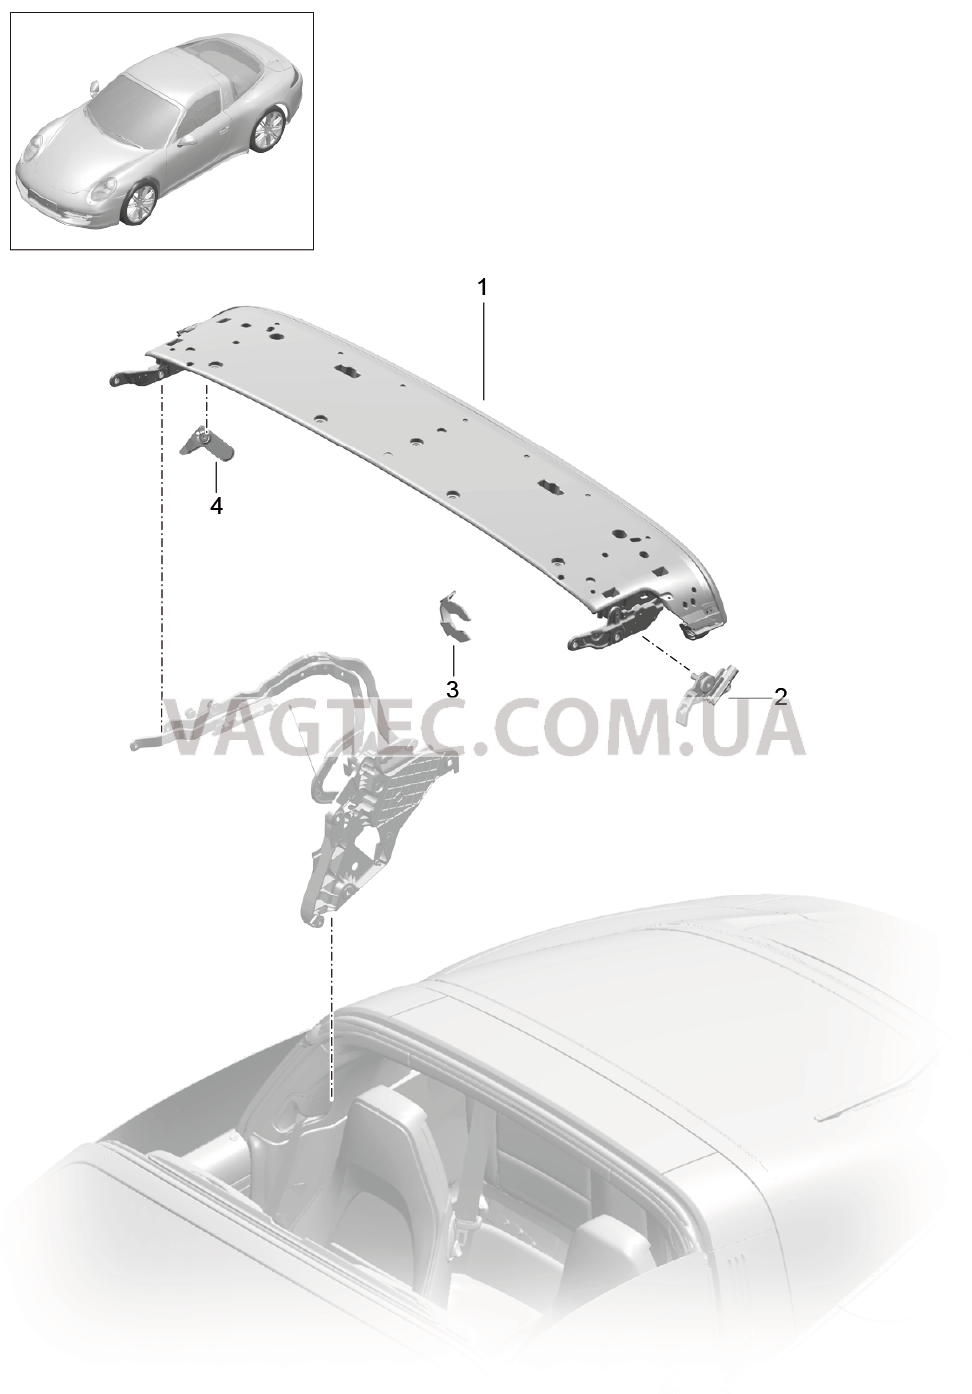 811-022 Каркас складного верха, Отдельные детали, Дуга, Блокировка, боковой
						
						TARGA для PORSCHE 911.Carrera 2017-2018